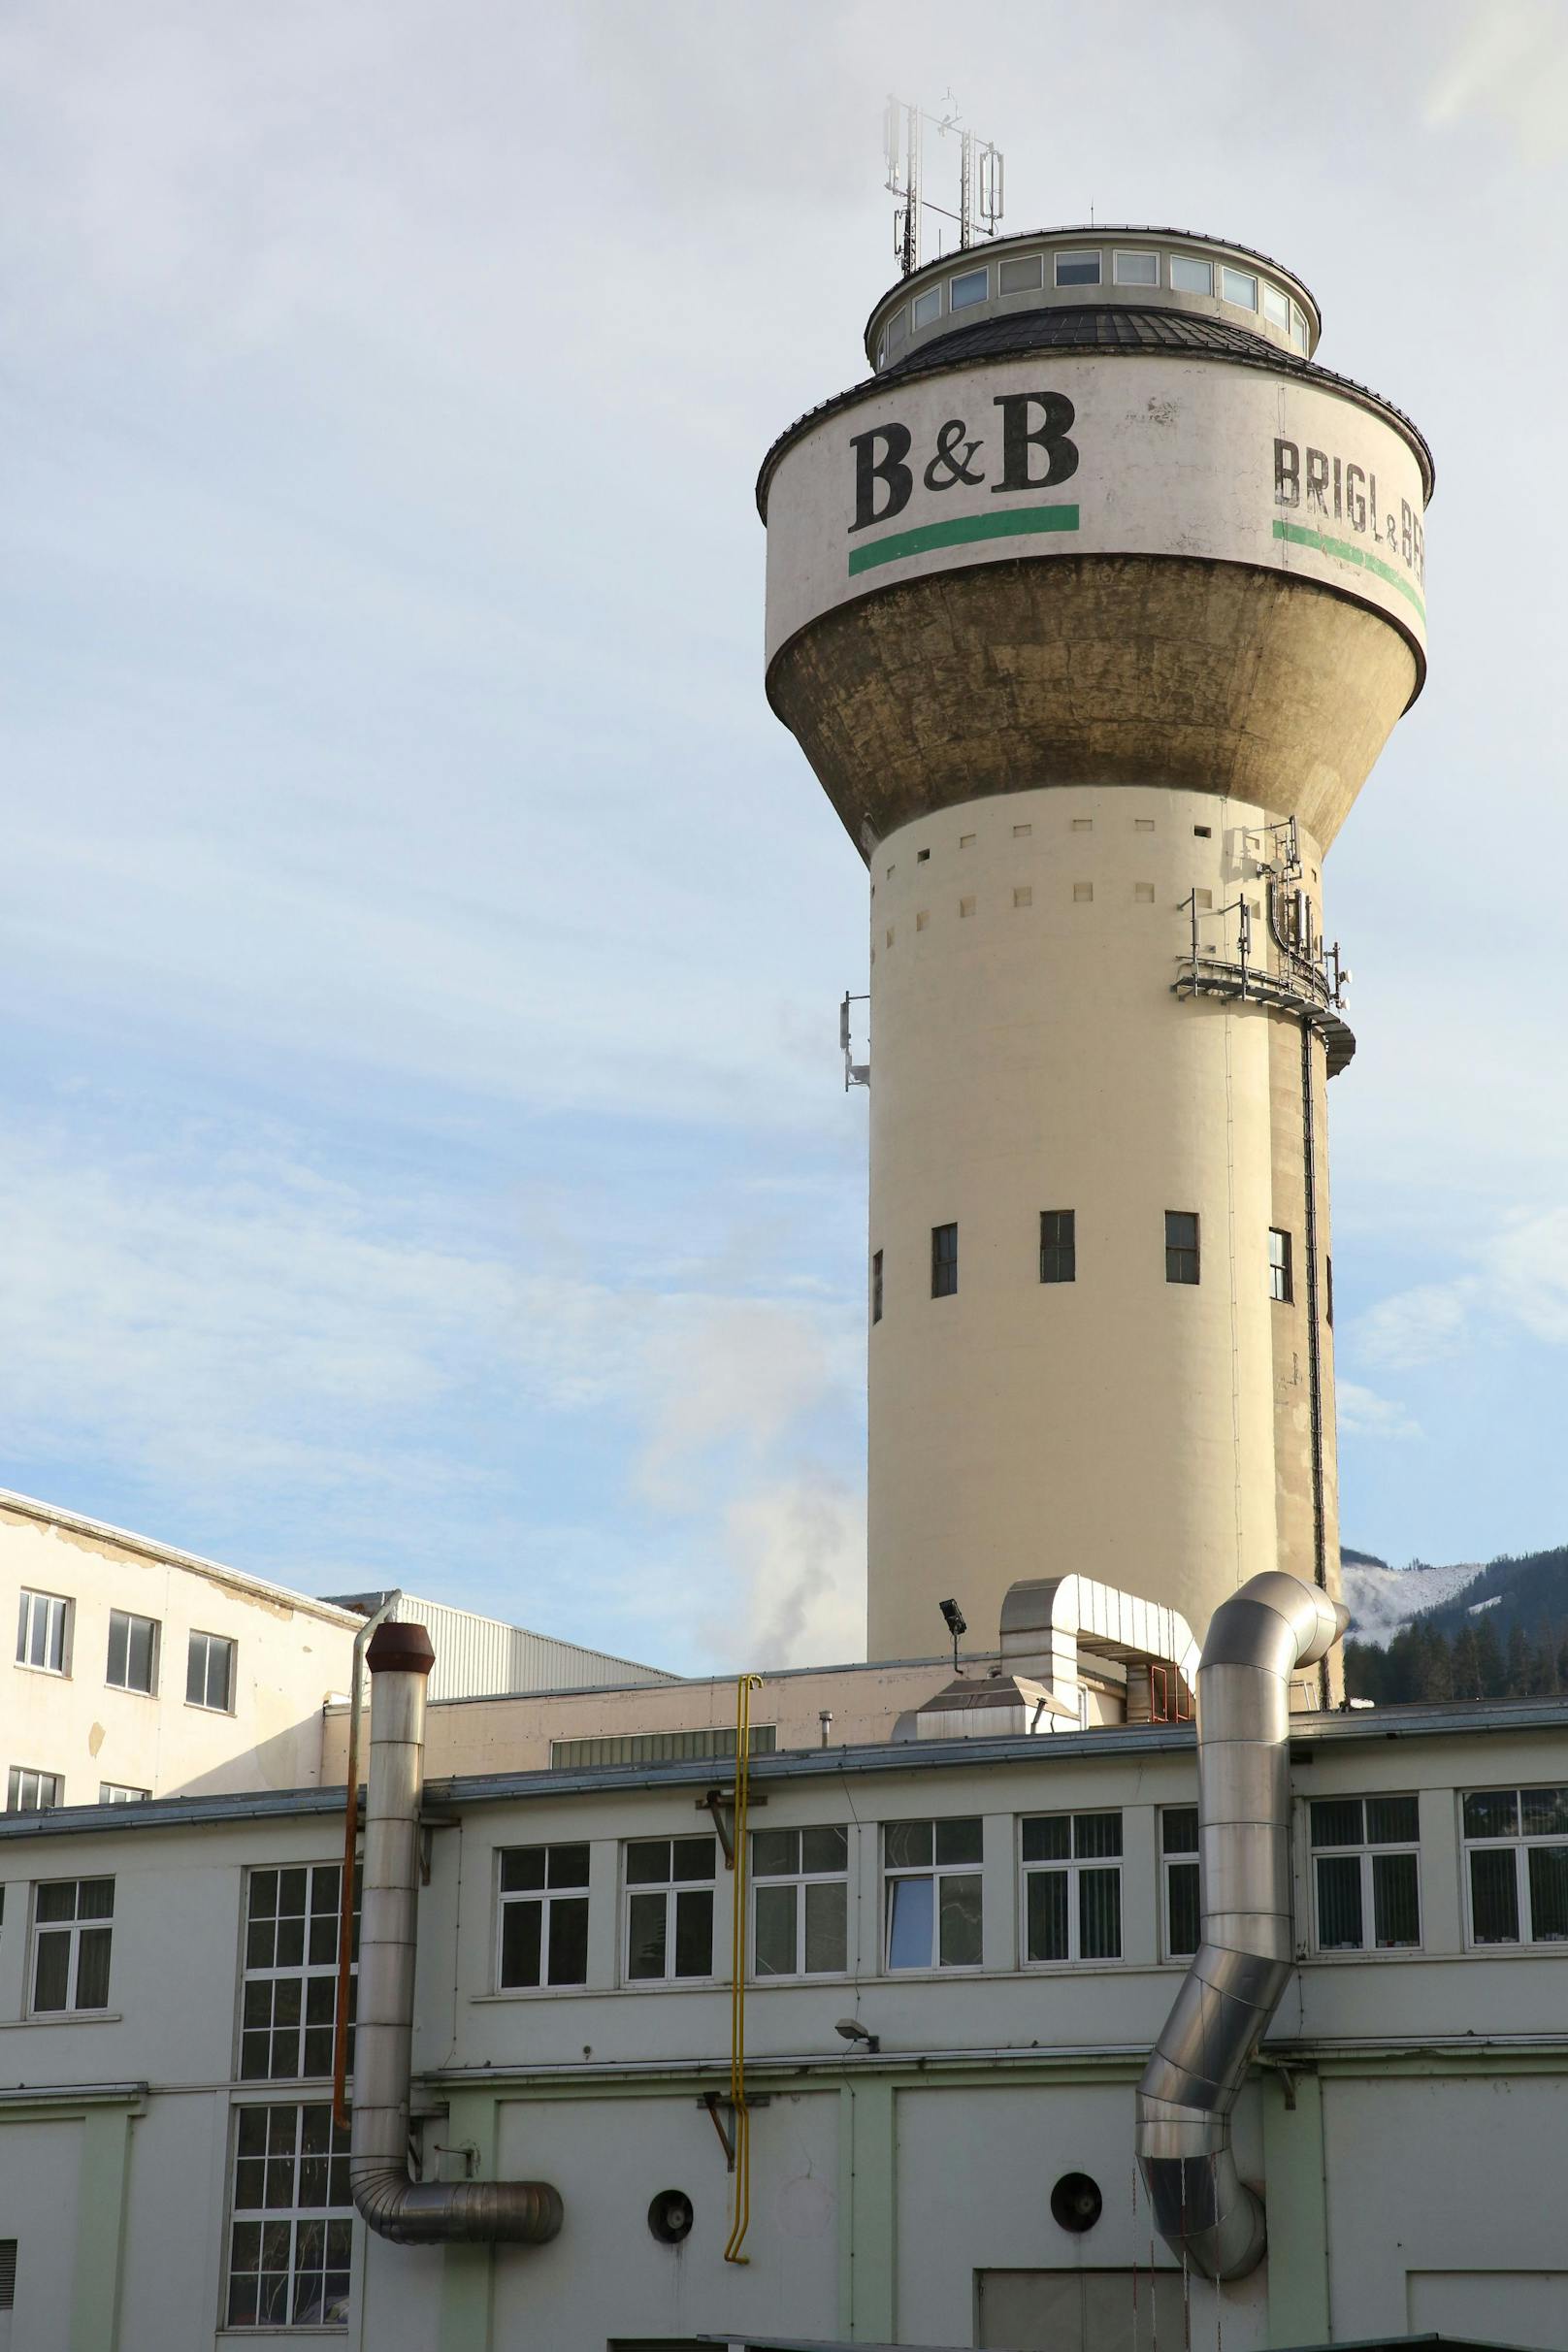 Blick in den steirischen Standort der Papierfabrik B&B, Brigl & Bergmeister, in Niklasdorf. Archivbilder 2015.